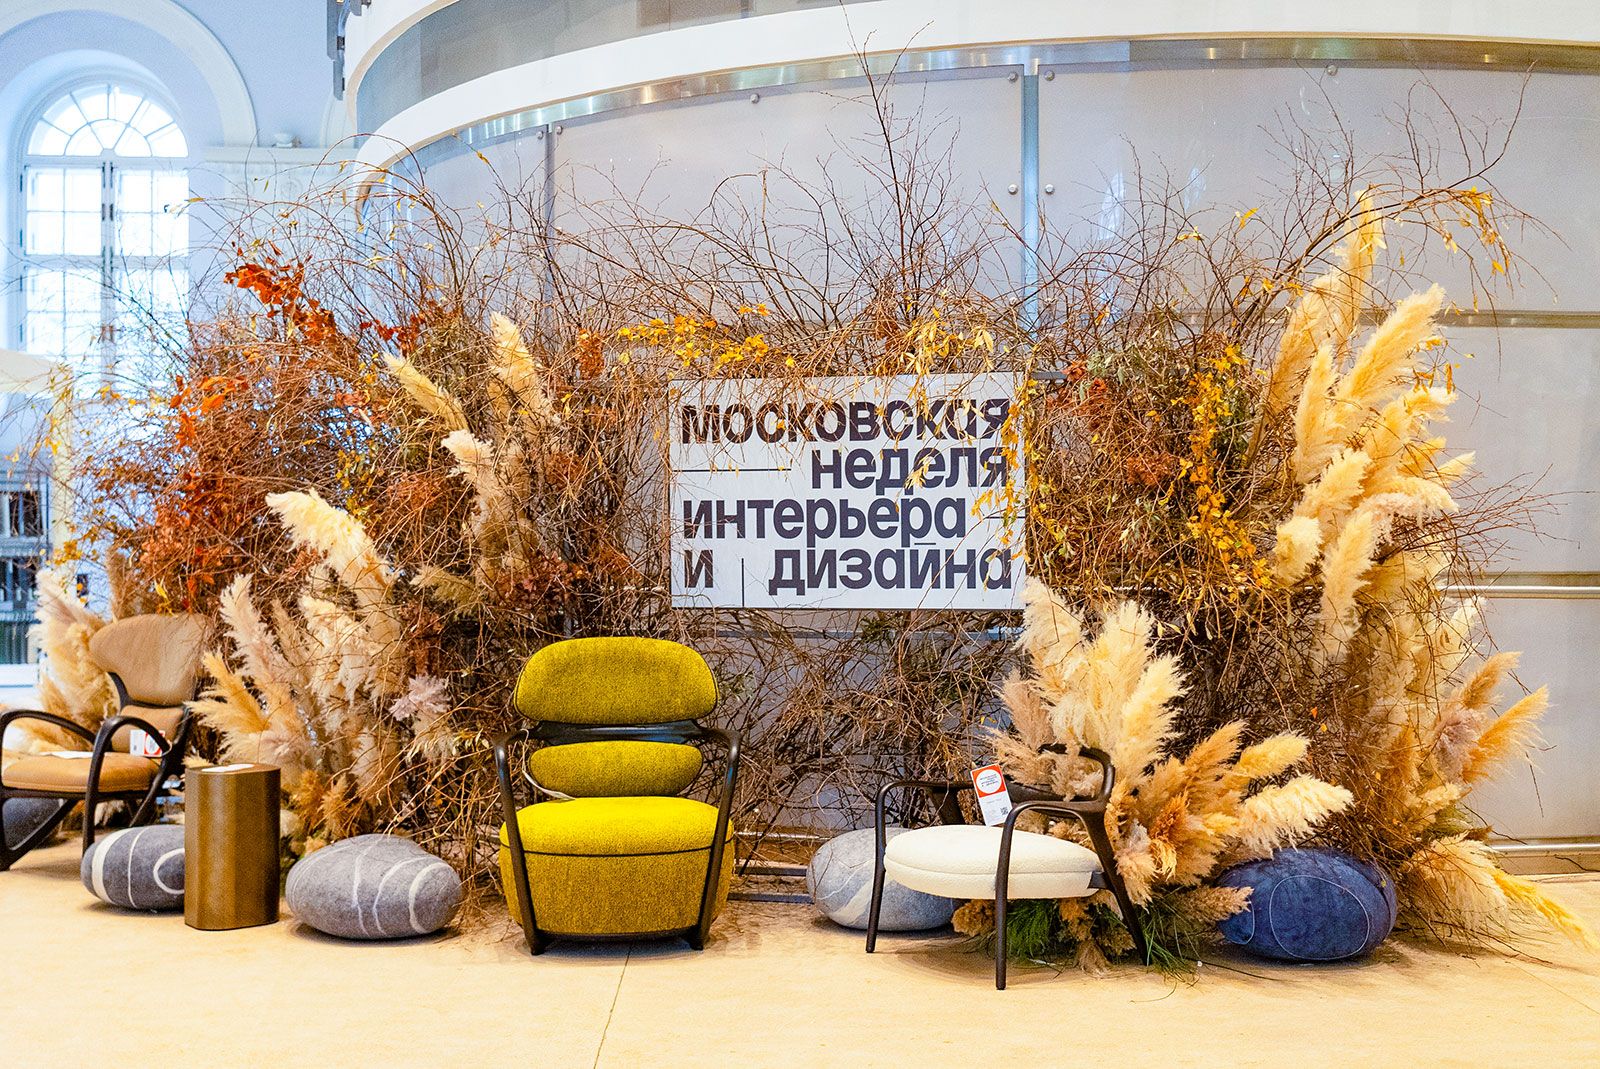 В «Манеже» пройдет IV Московская неделя интерьера и дизайна